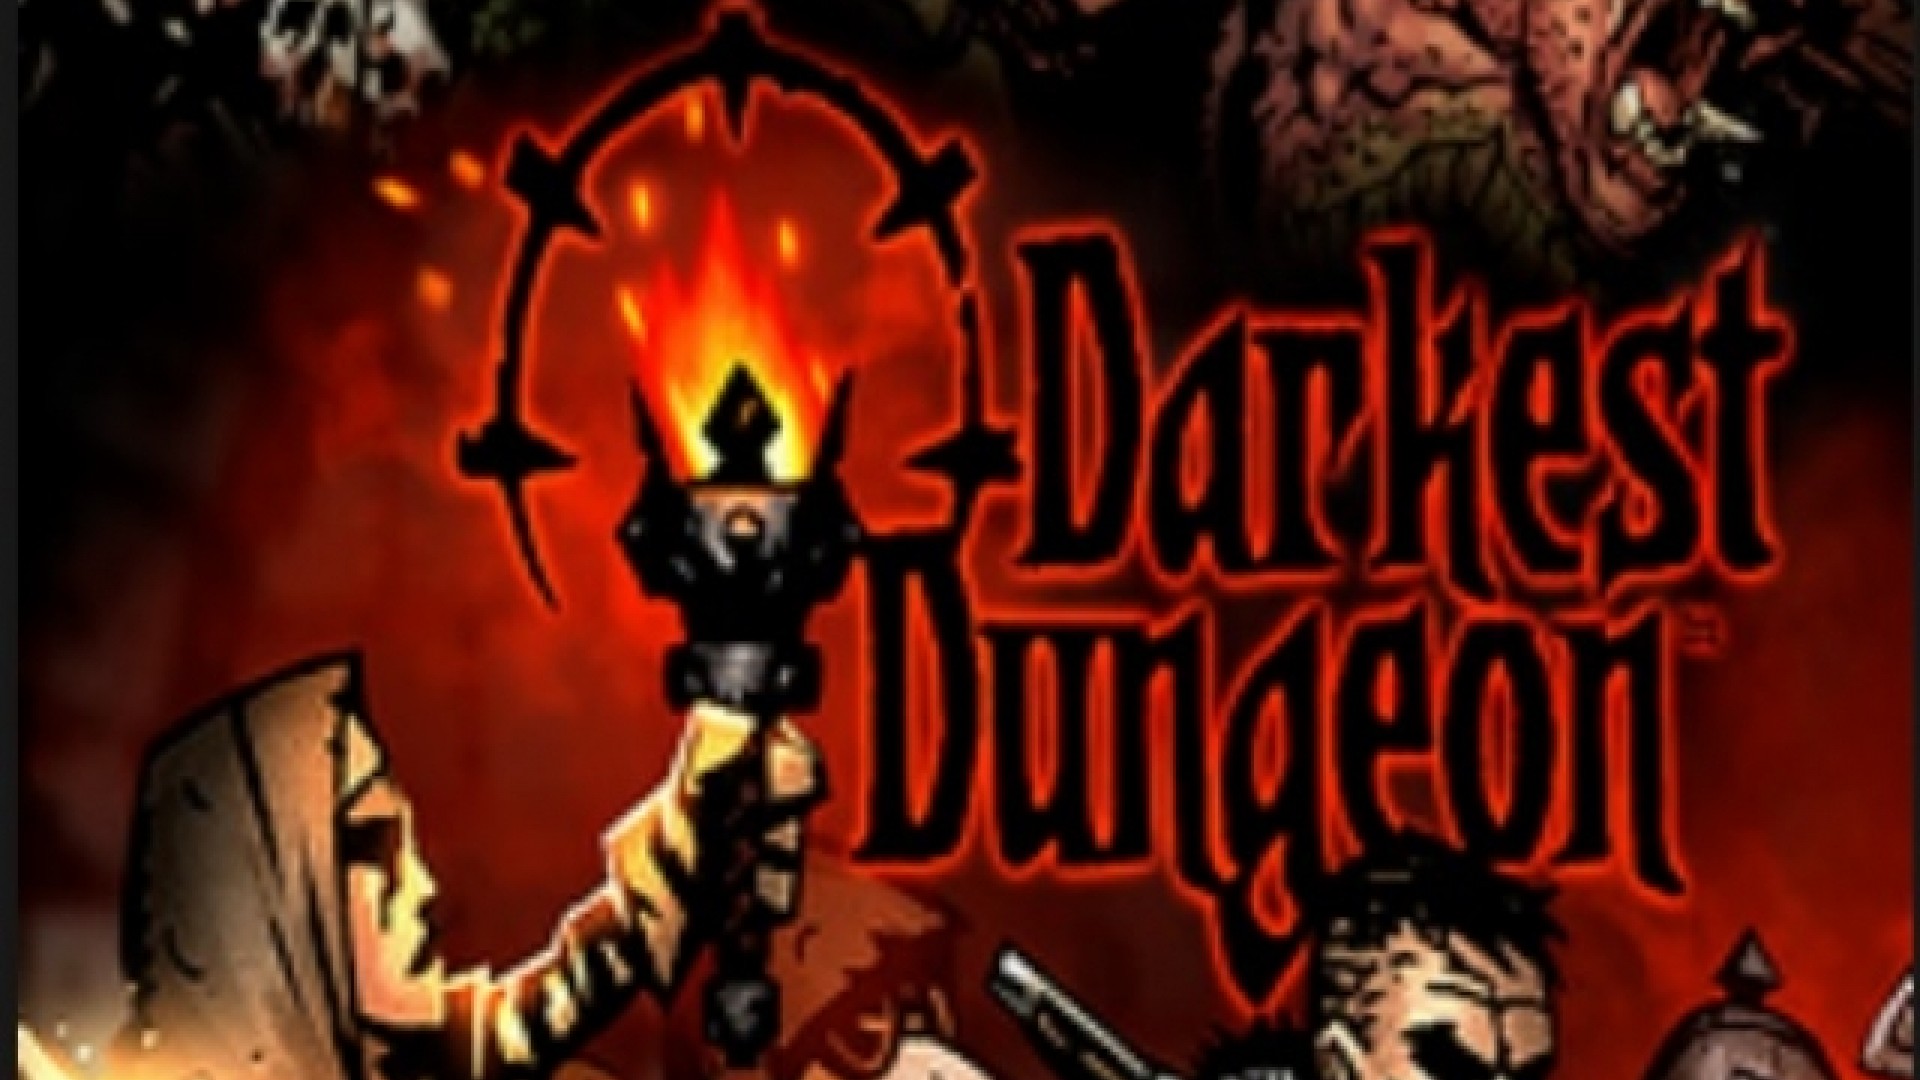 darkest dungeon 2 steam key